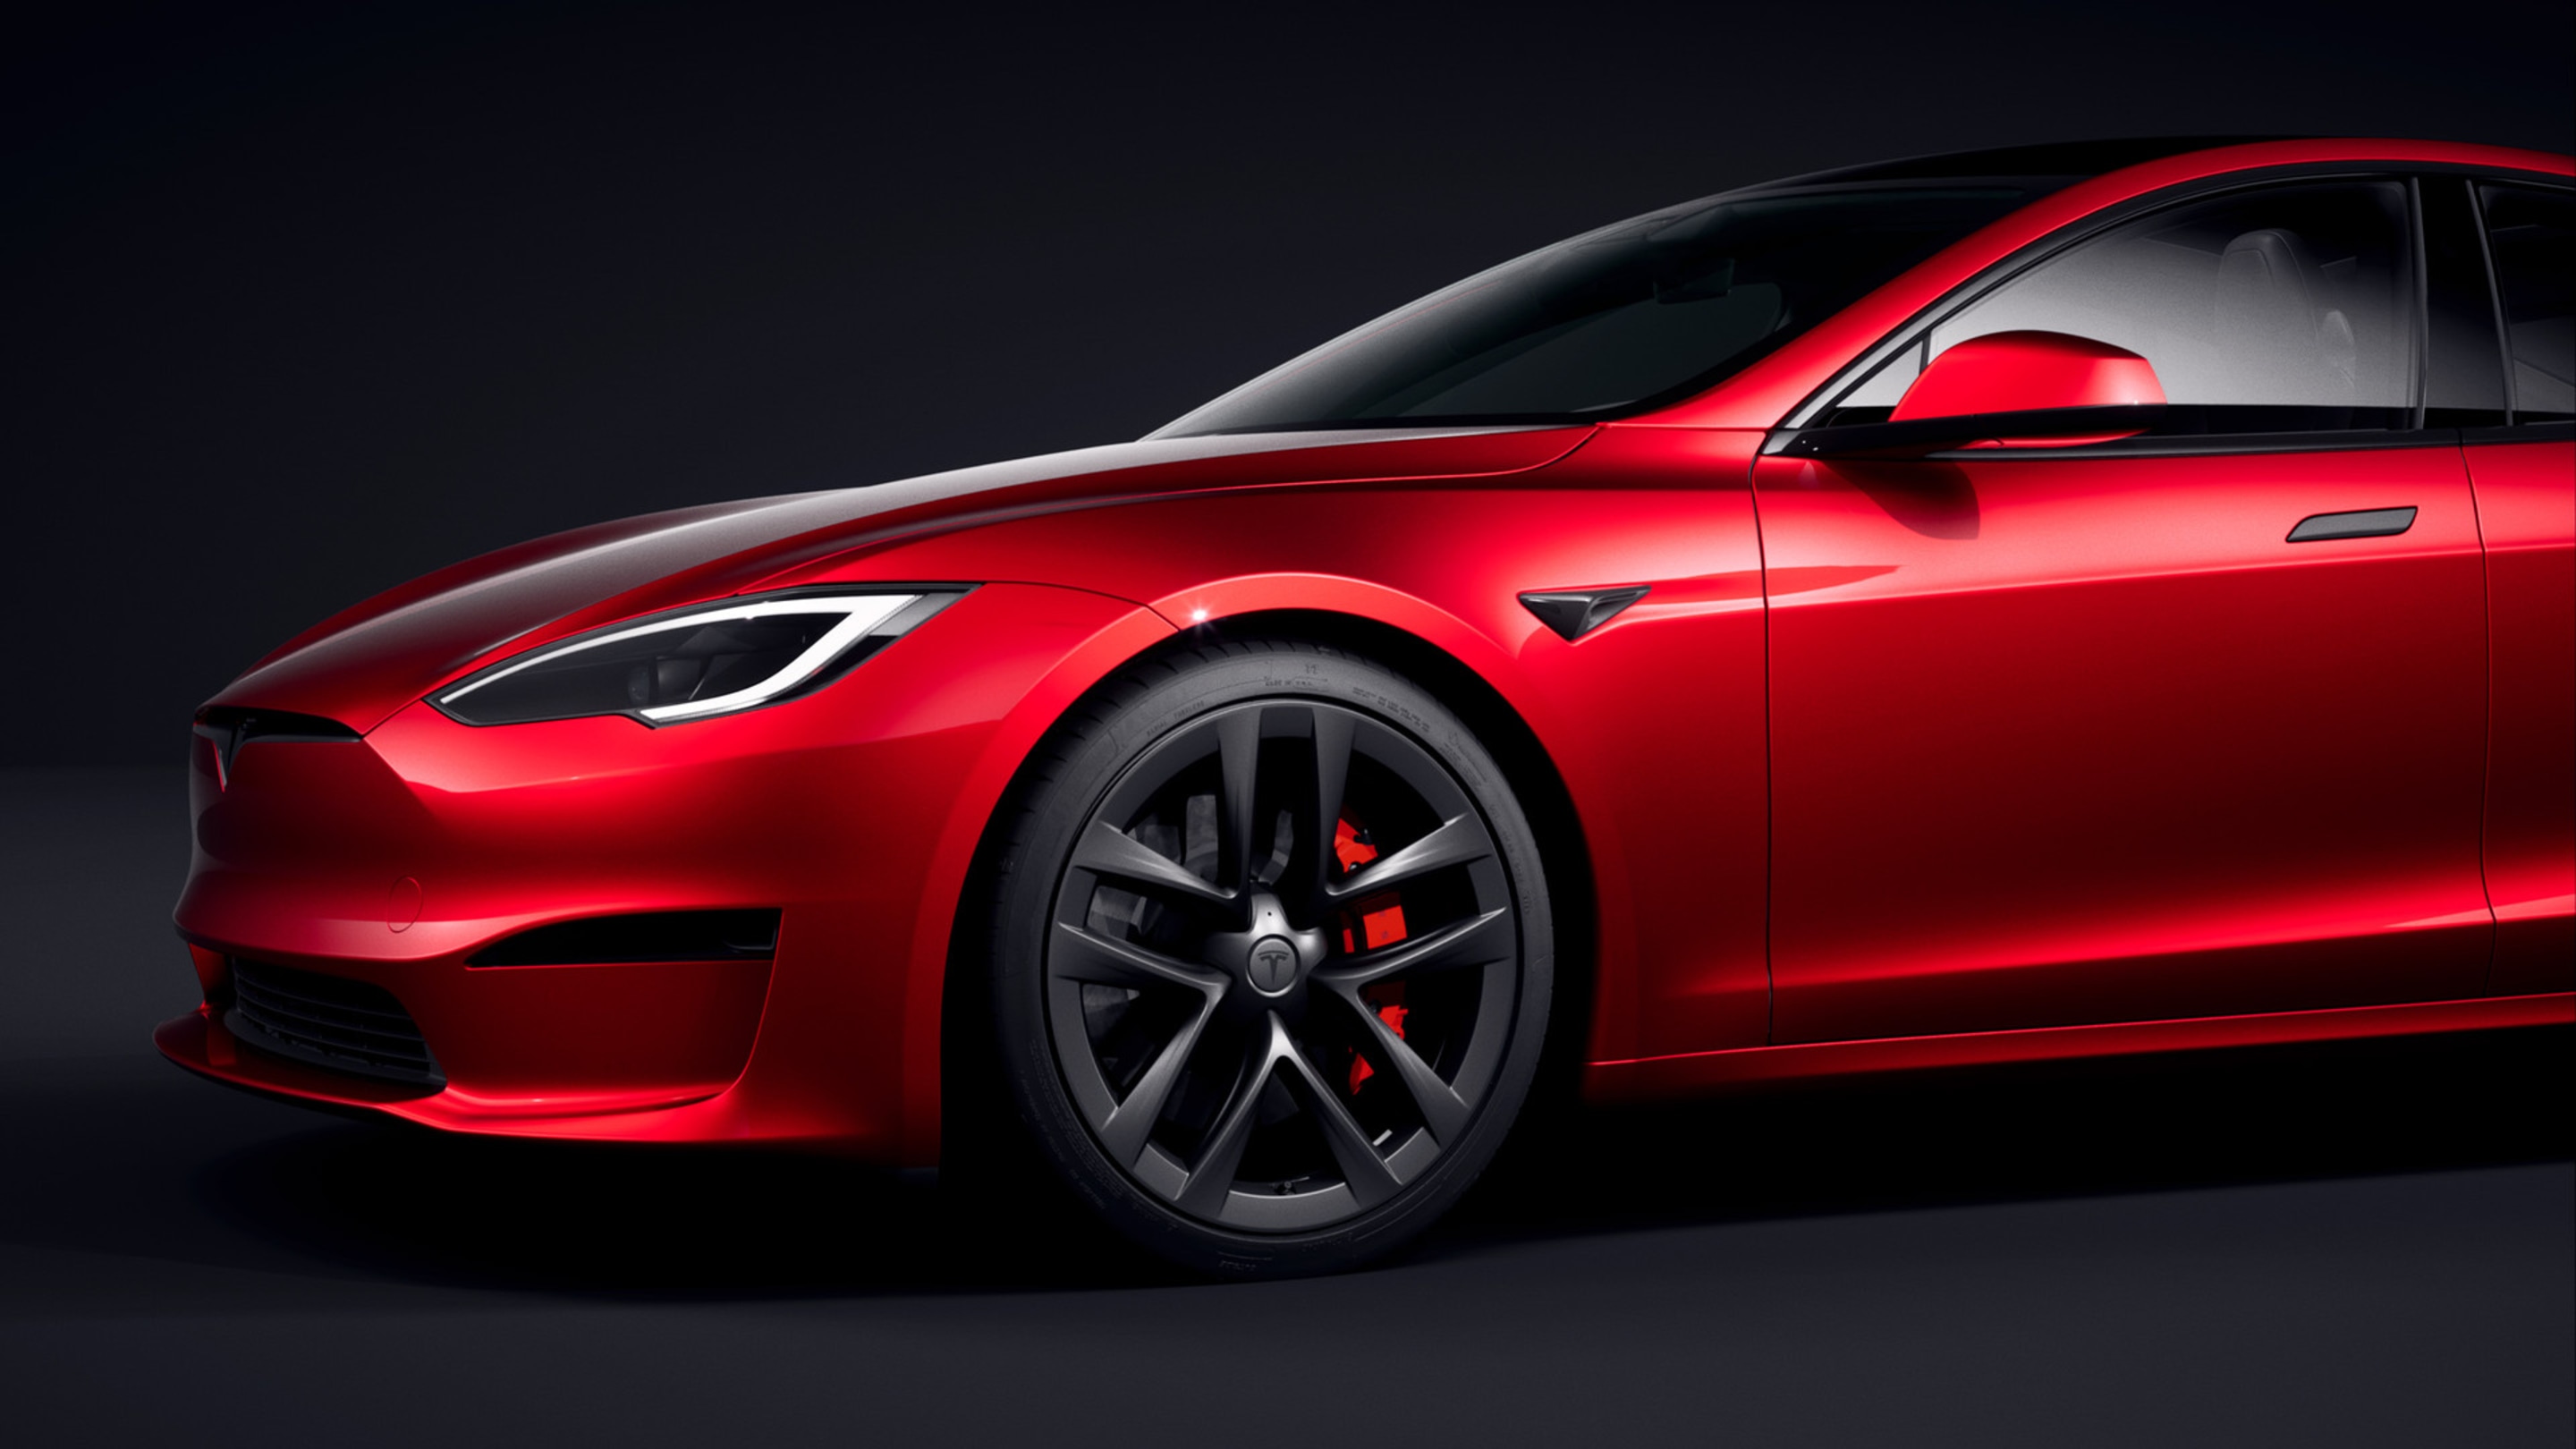 Vista frontal-lateral de un Model S rojo